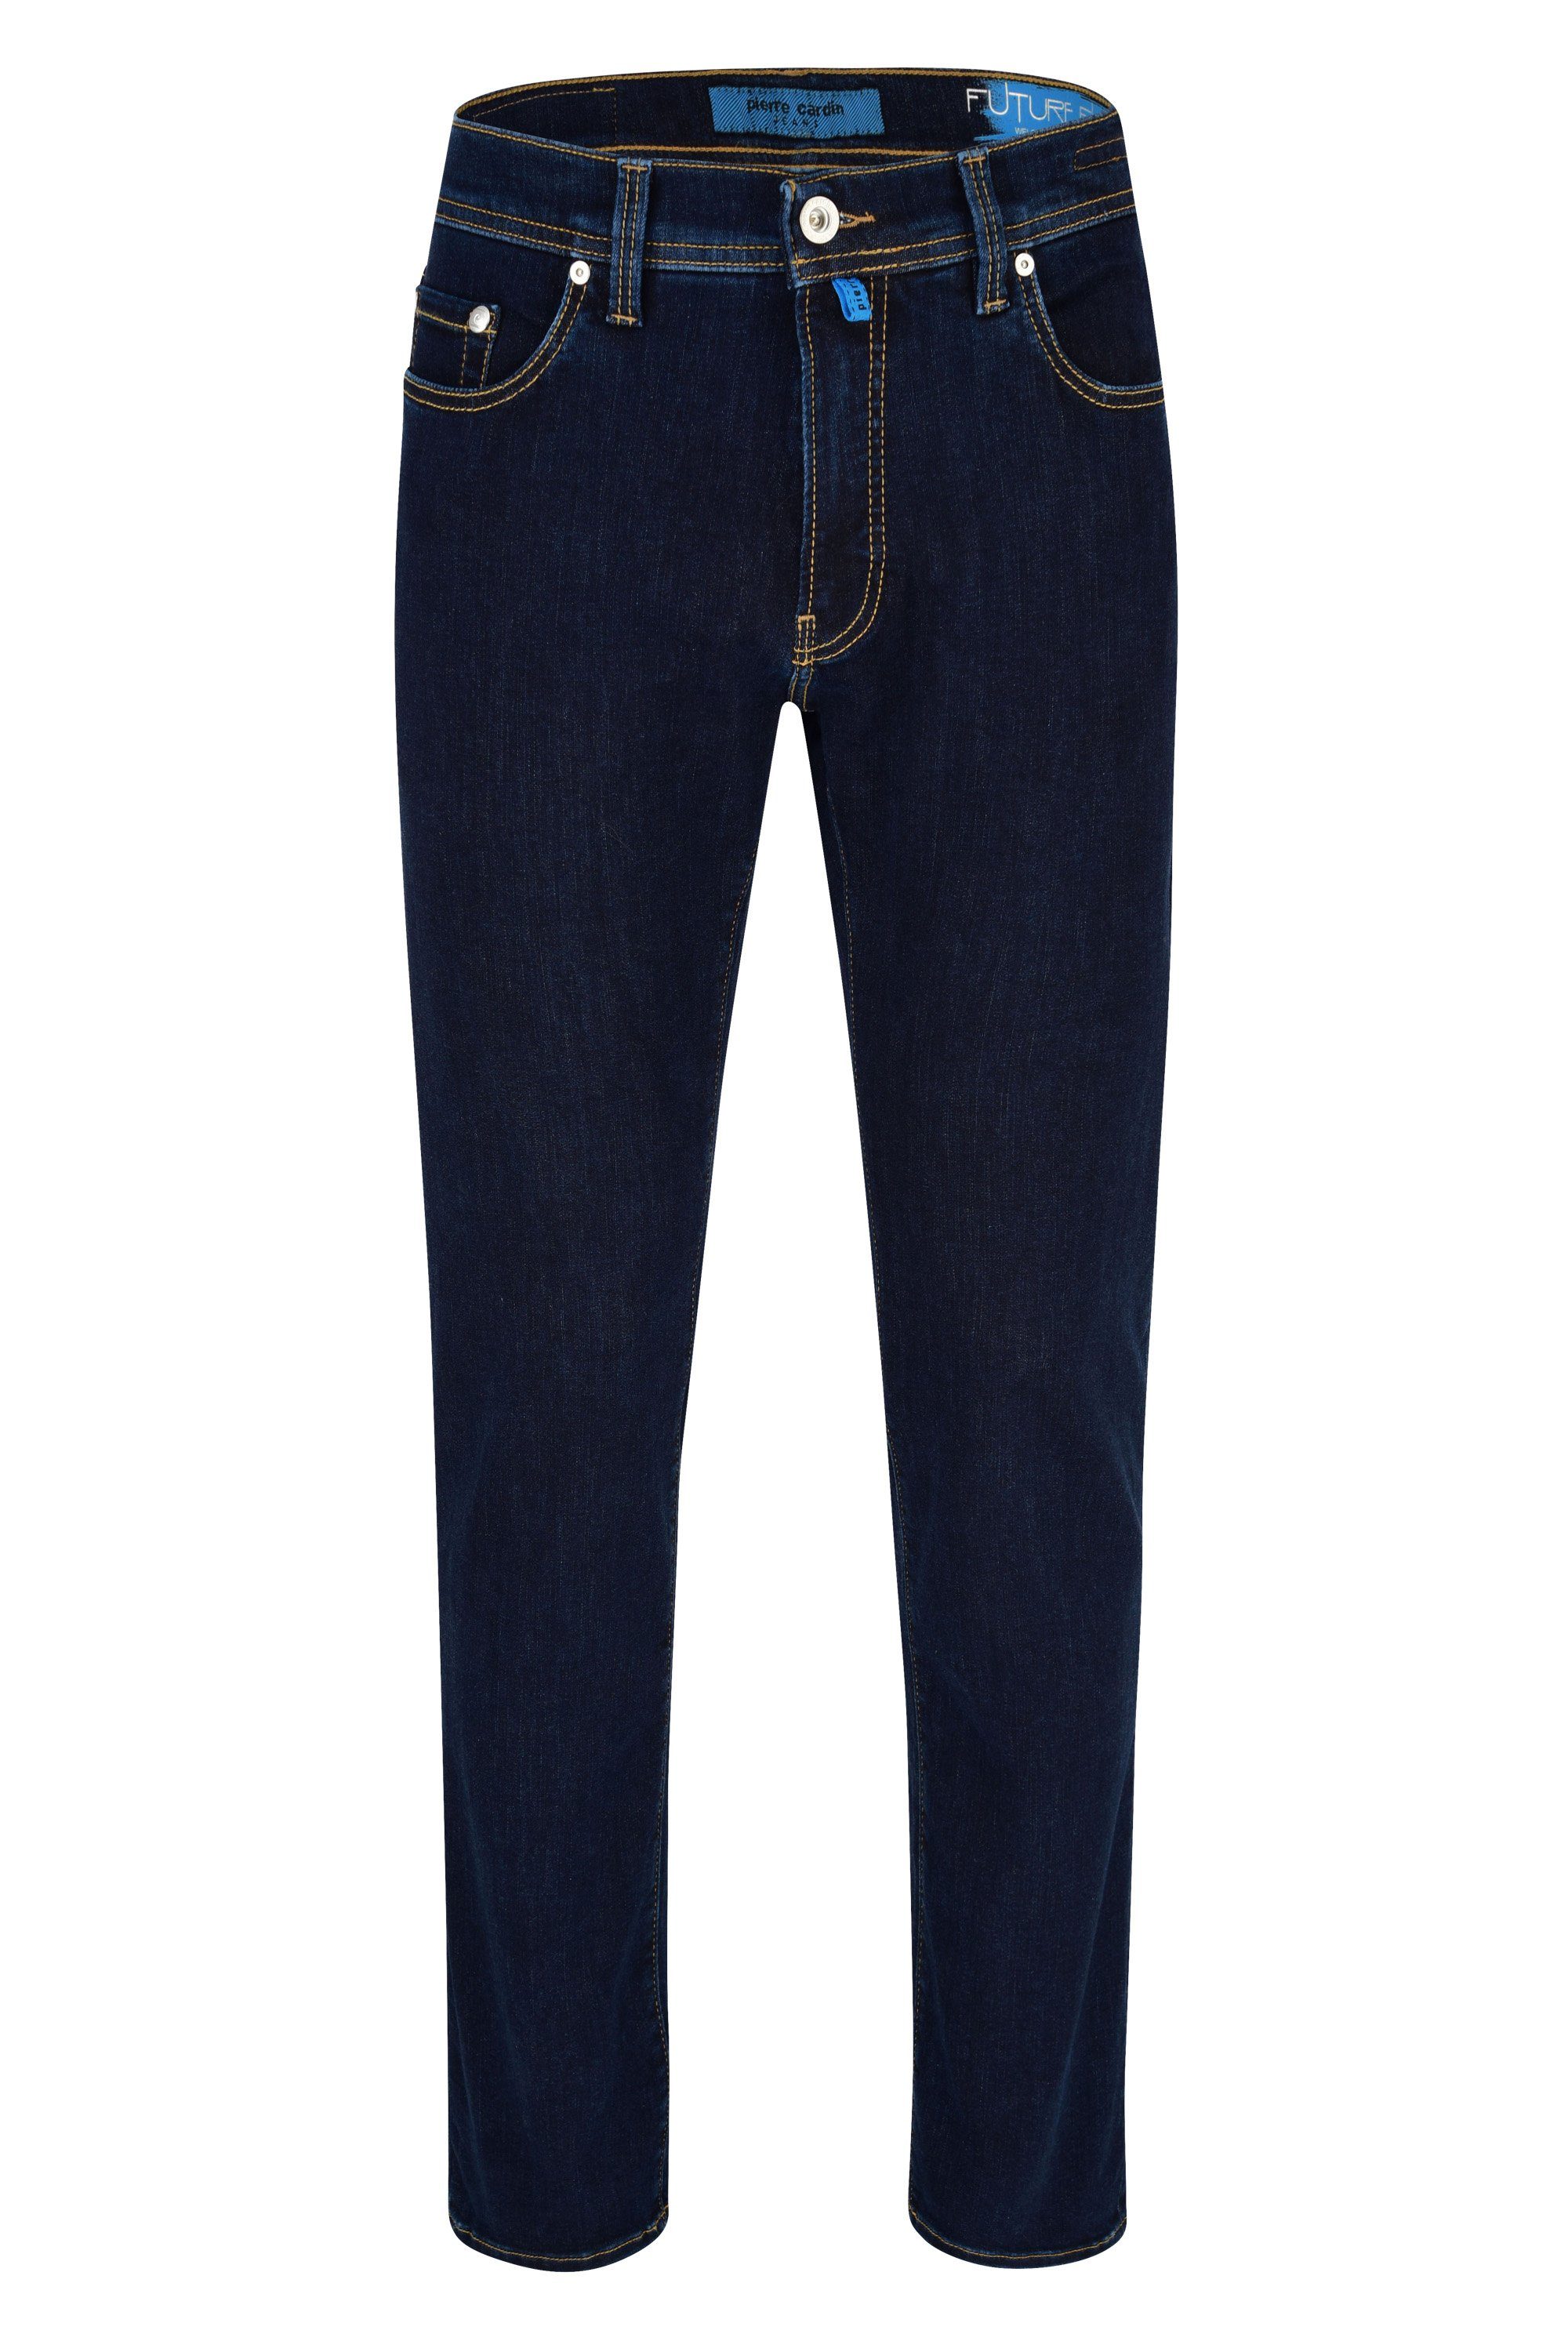 Pierre Cardin 5-Pocket-Jeans PIERRE CARDIN FUTUREFLEX LYON dark blue 3451 8880.89